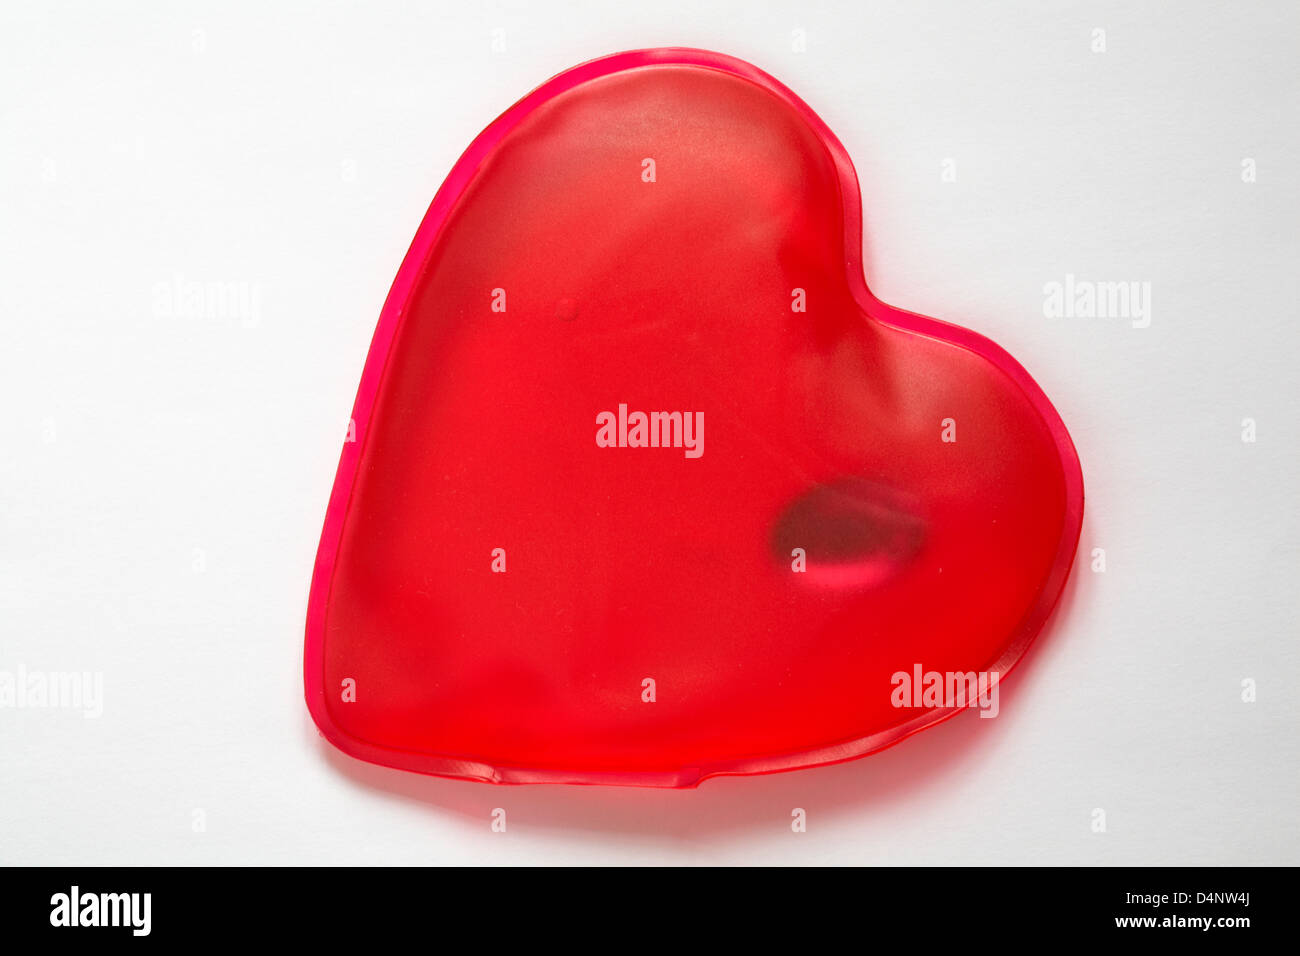 Roter herzförmiger Handwärmer isoliert auf weißem Hintergrund - Handwärmer Stockfoto